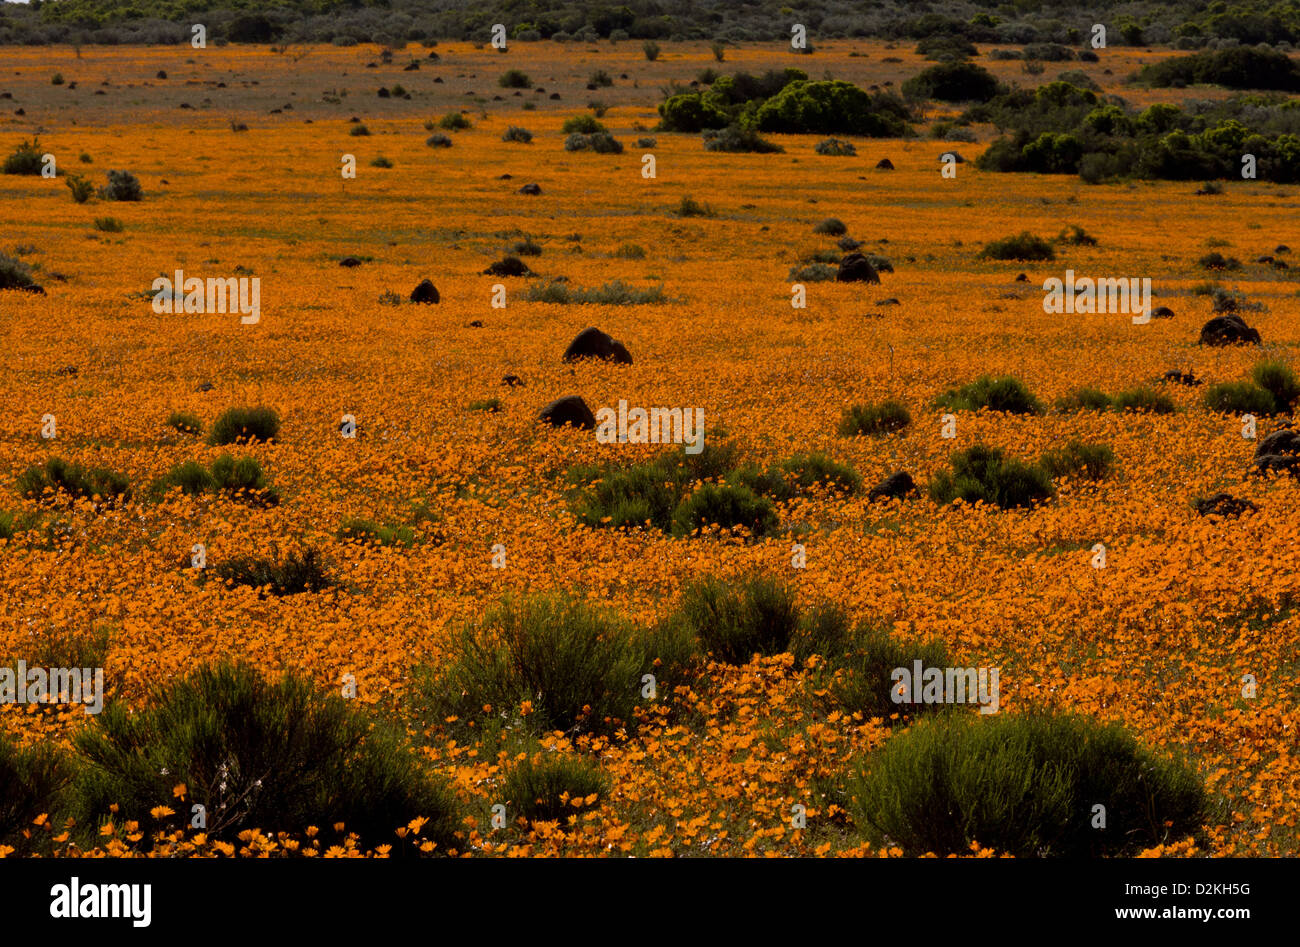 Termite mounds among Orange Daisies (Ursinia cakilefolia) Skilpad Reserve, Namaqua National Park, Namaqua Desert, South Africa Stock Photo